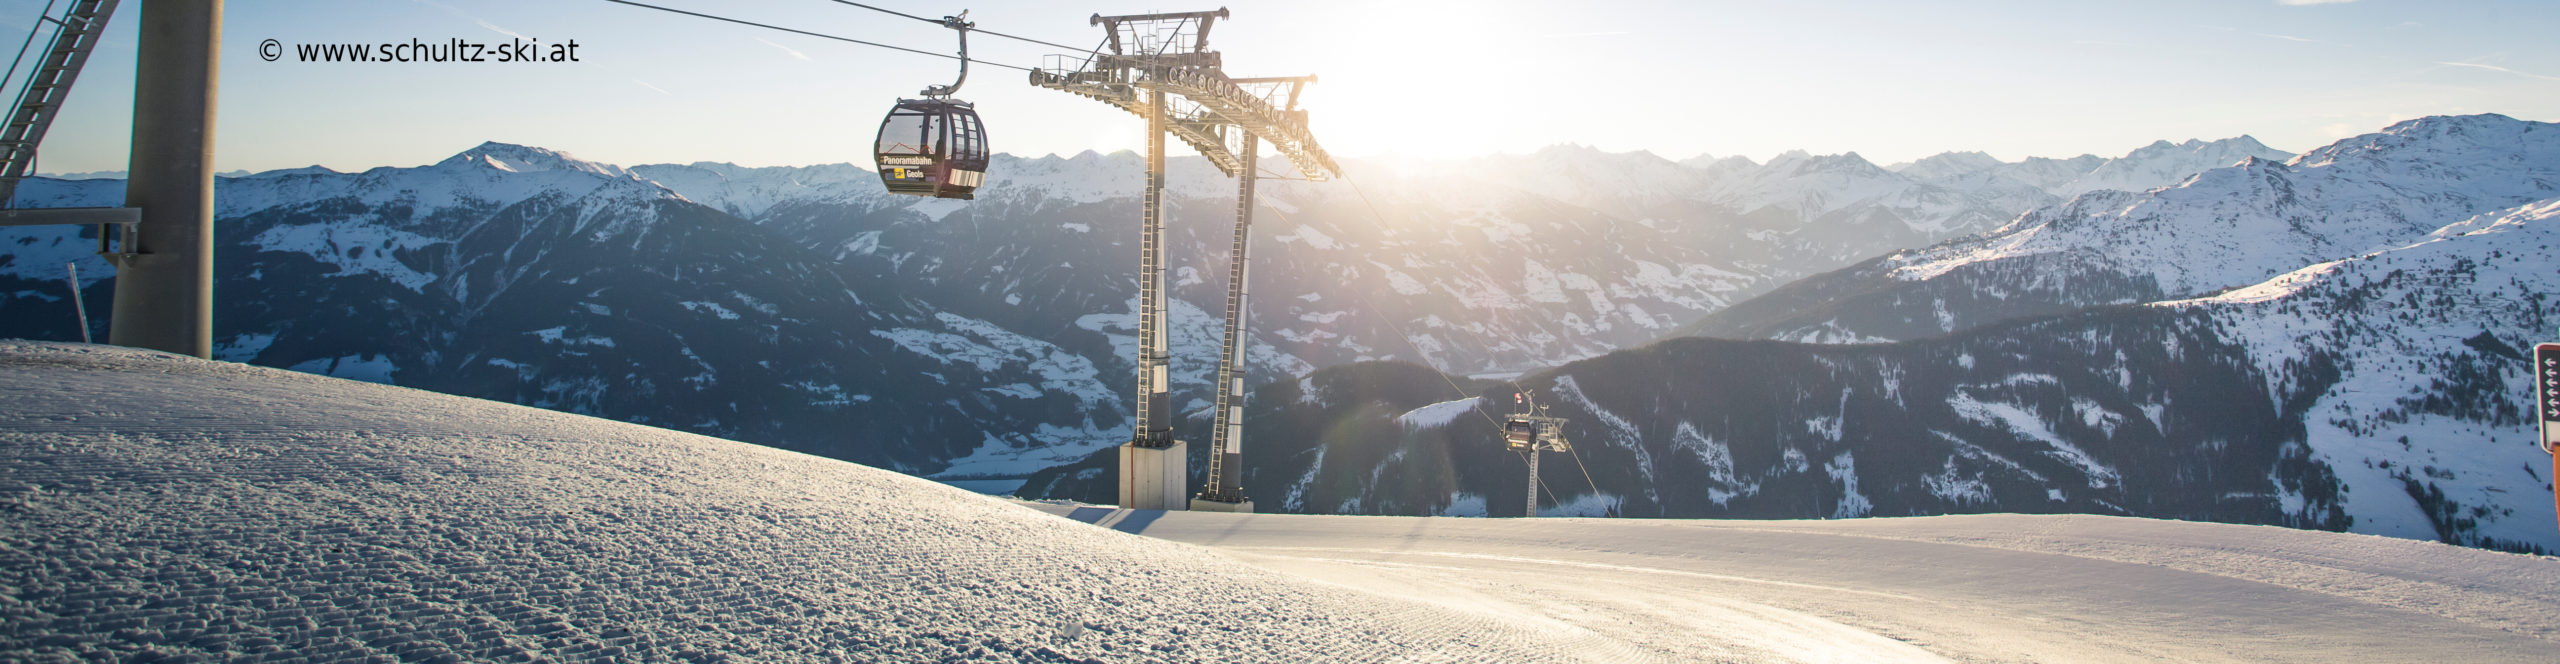 ZILLERTAL – verlängertes Skiwochenende mit 3 Skitagen – in den Weihnachtsferien – Hotel in Strass – ab Mittwoch nachmittag 